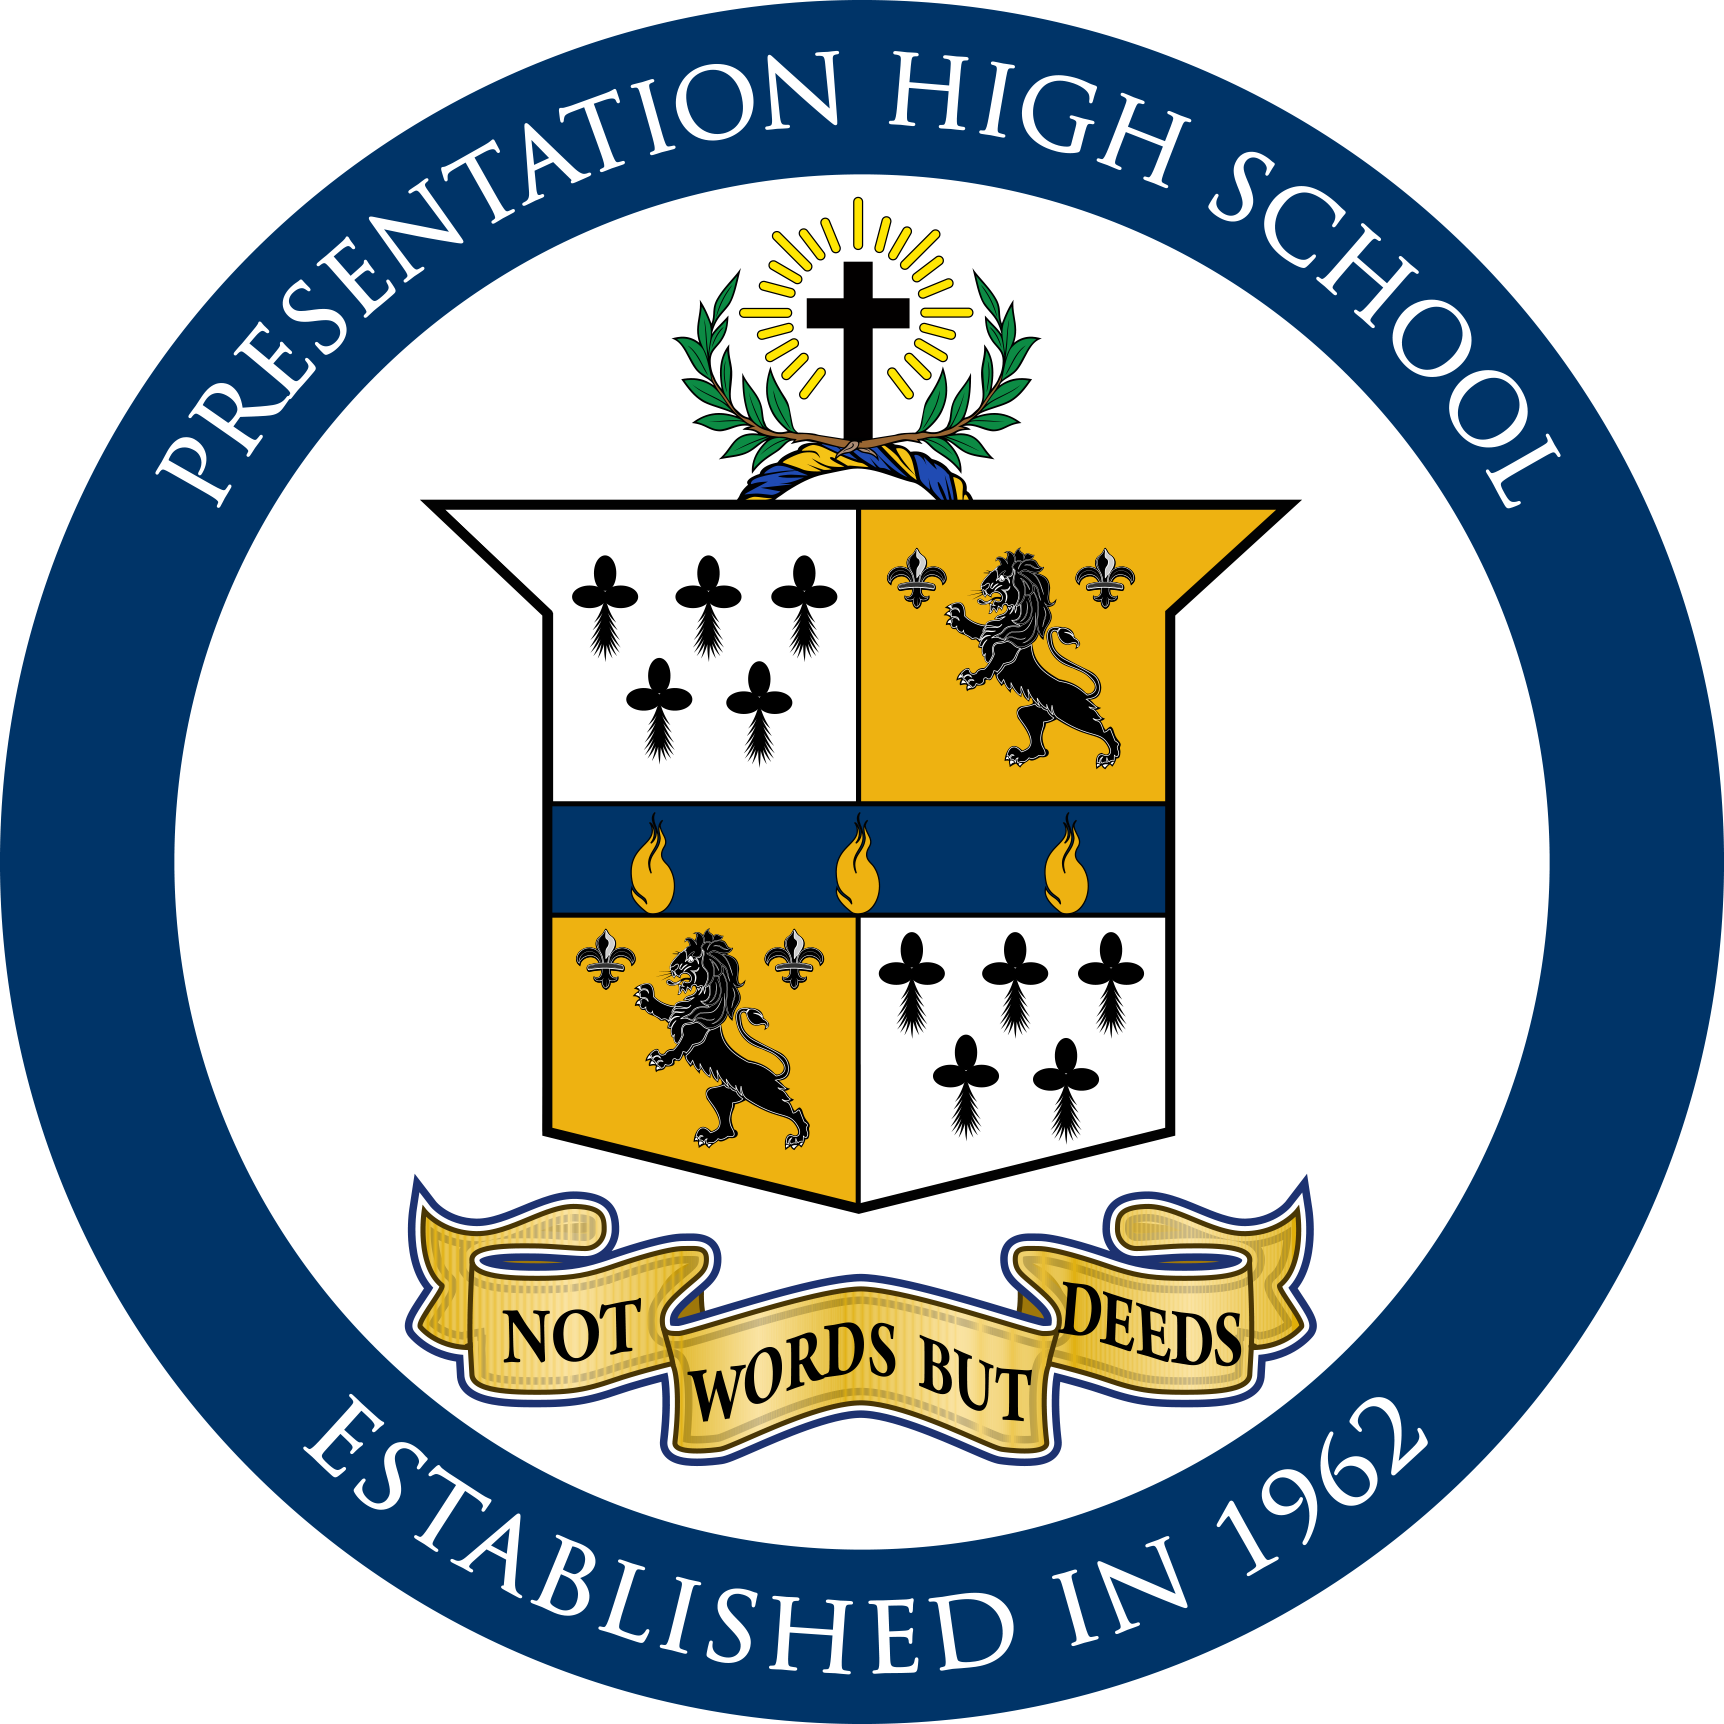 Presentation High School Logo